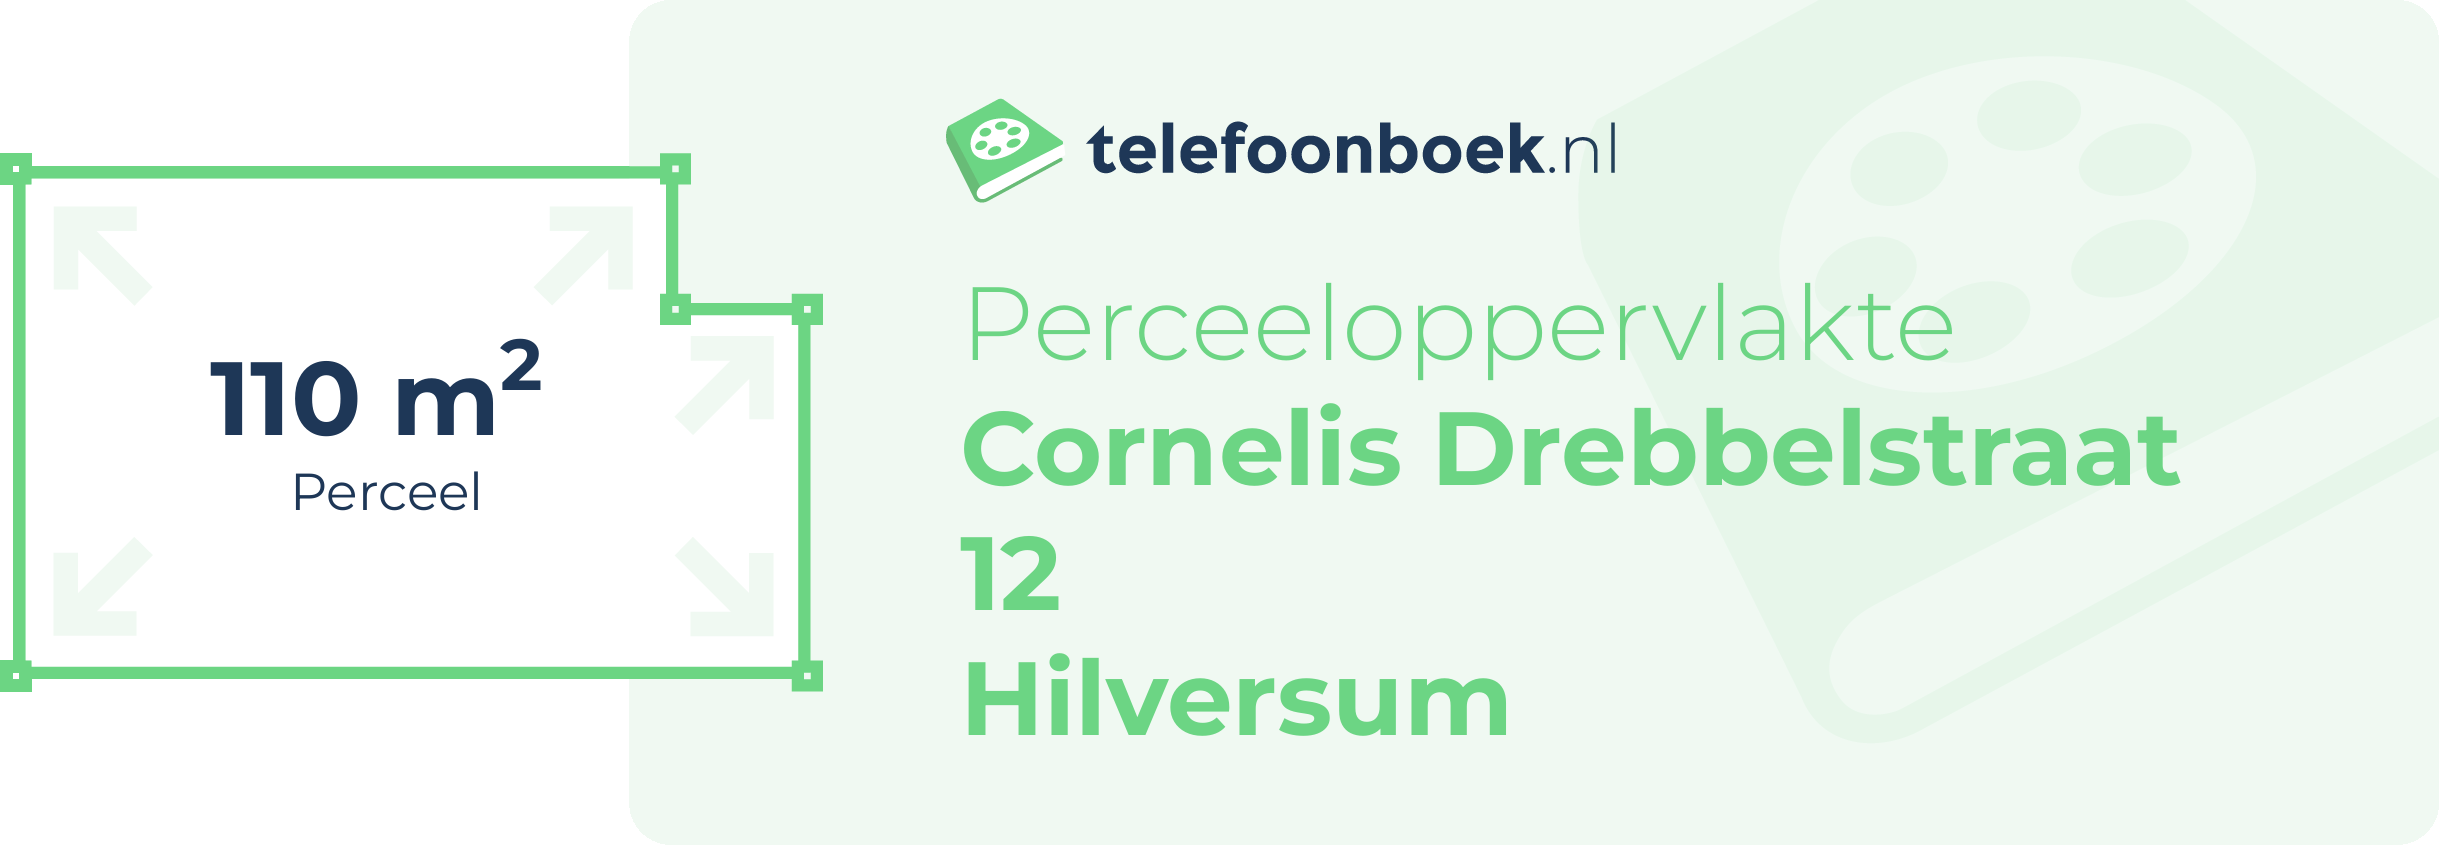 Perceeloppervlakte Cornelis Drebbelstraat 12 Hilversum